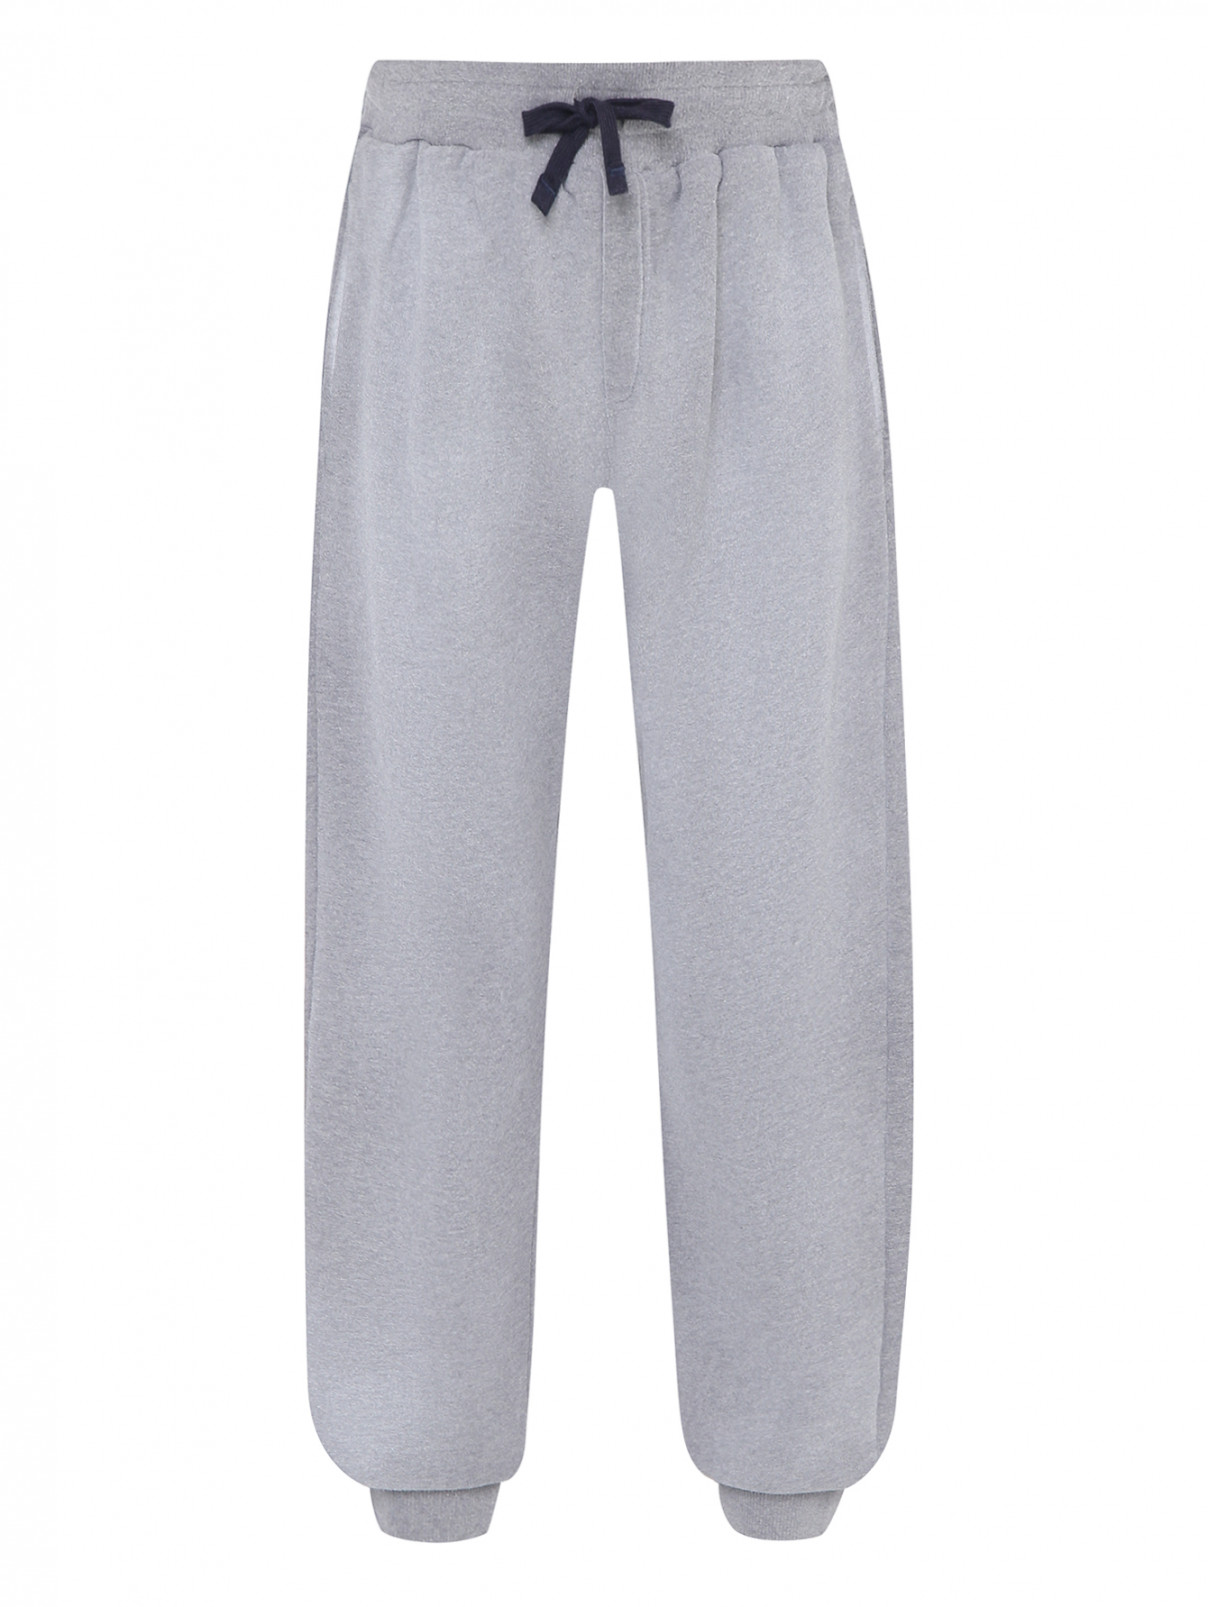 Трикотажные брюки на резинке Dolce & Gabbana  –  Общий вид  – Цвет:  Серый